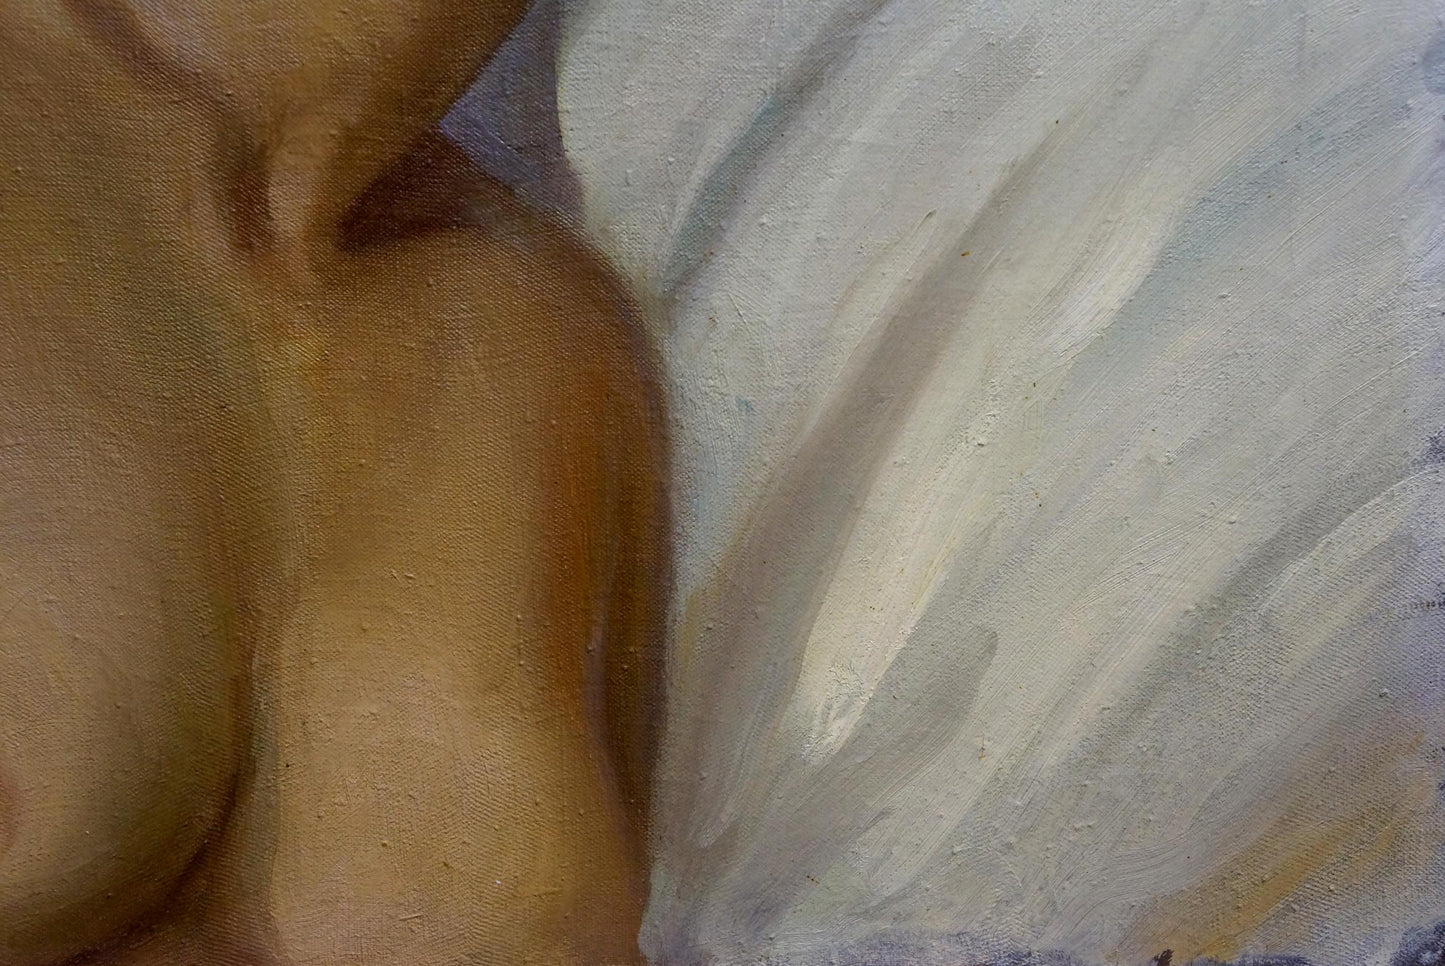 Oil painting Naked girl